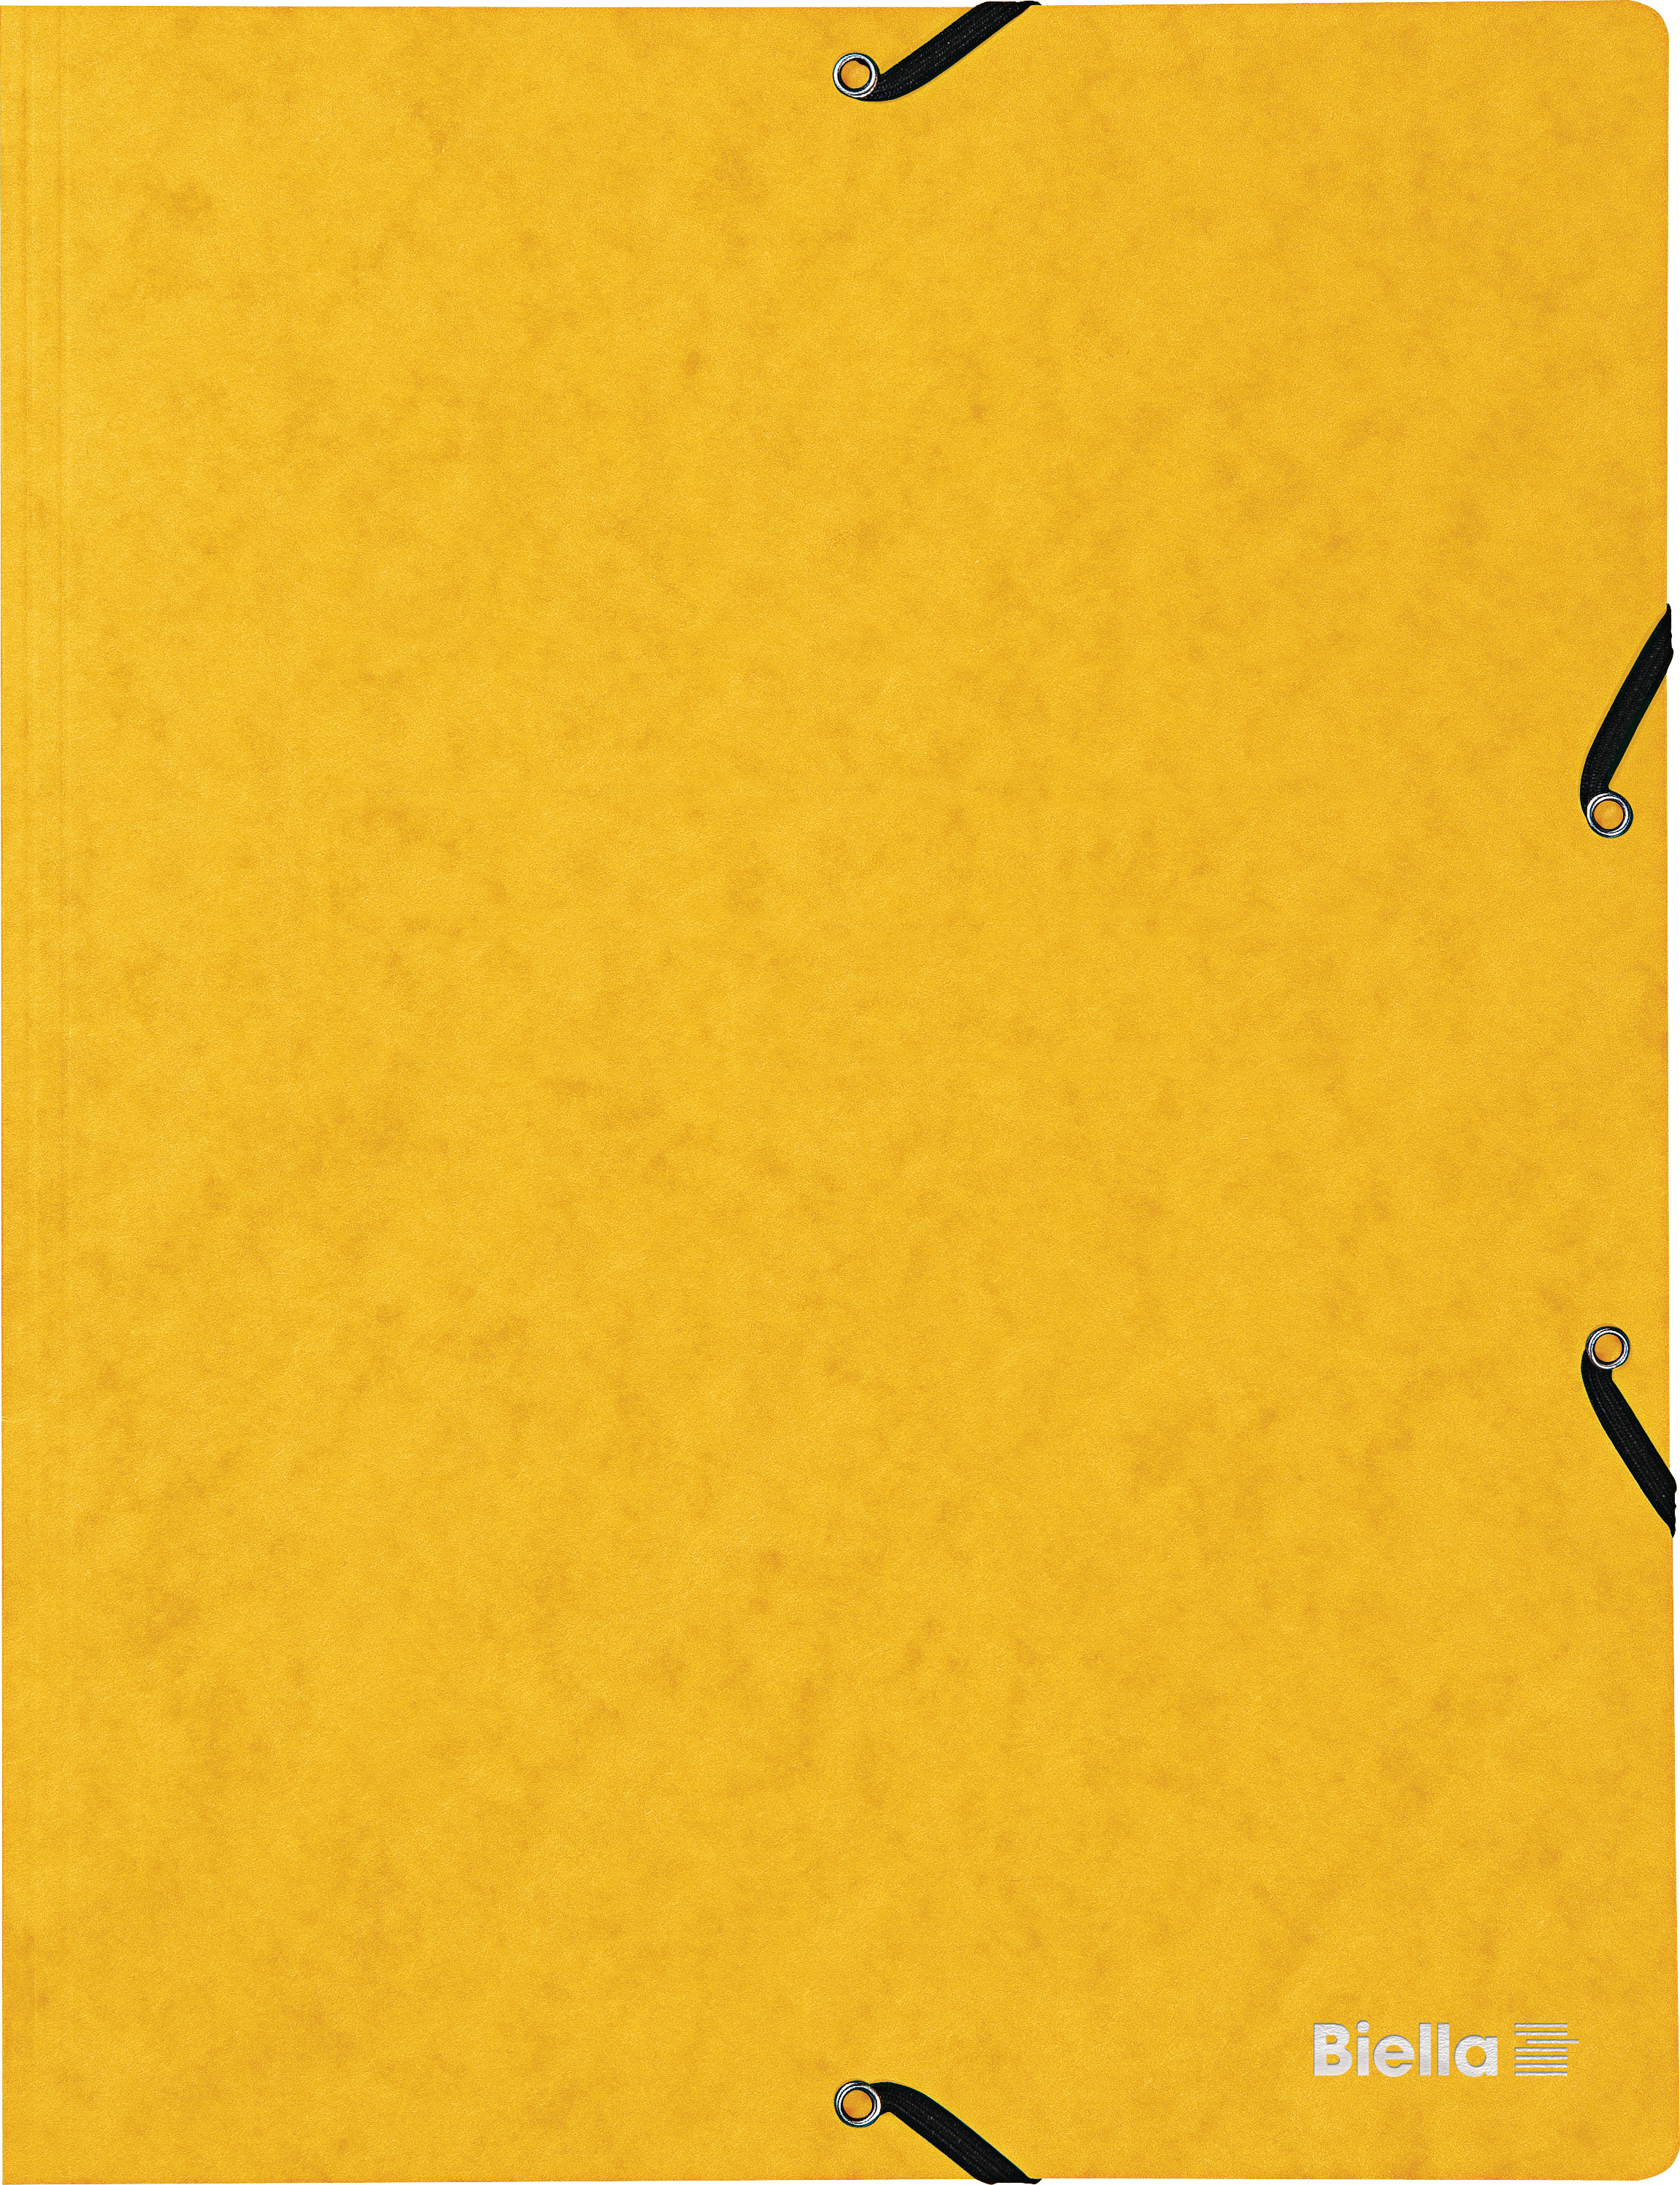 BIELLA Dossier ferm. Élastique A4 17840120U jaune, 355gm2 200 flls.